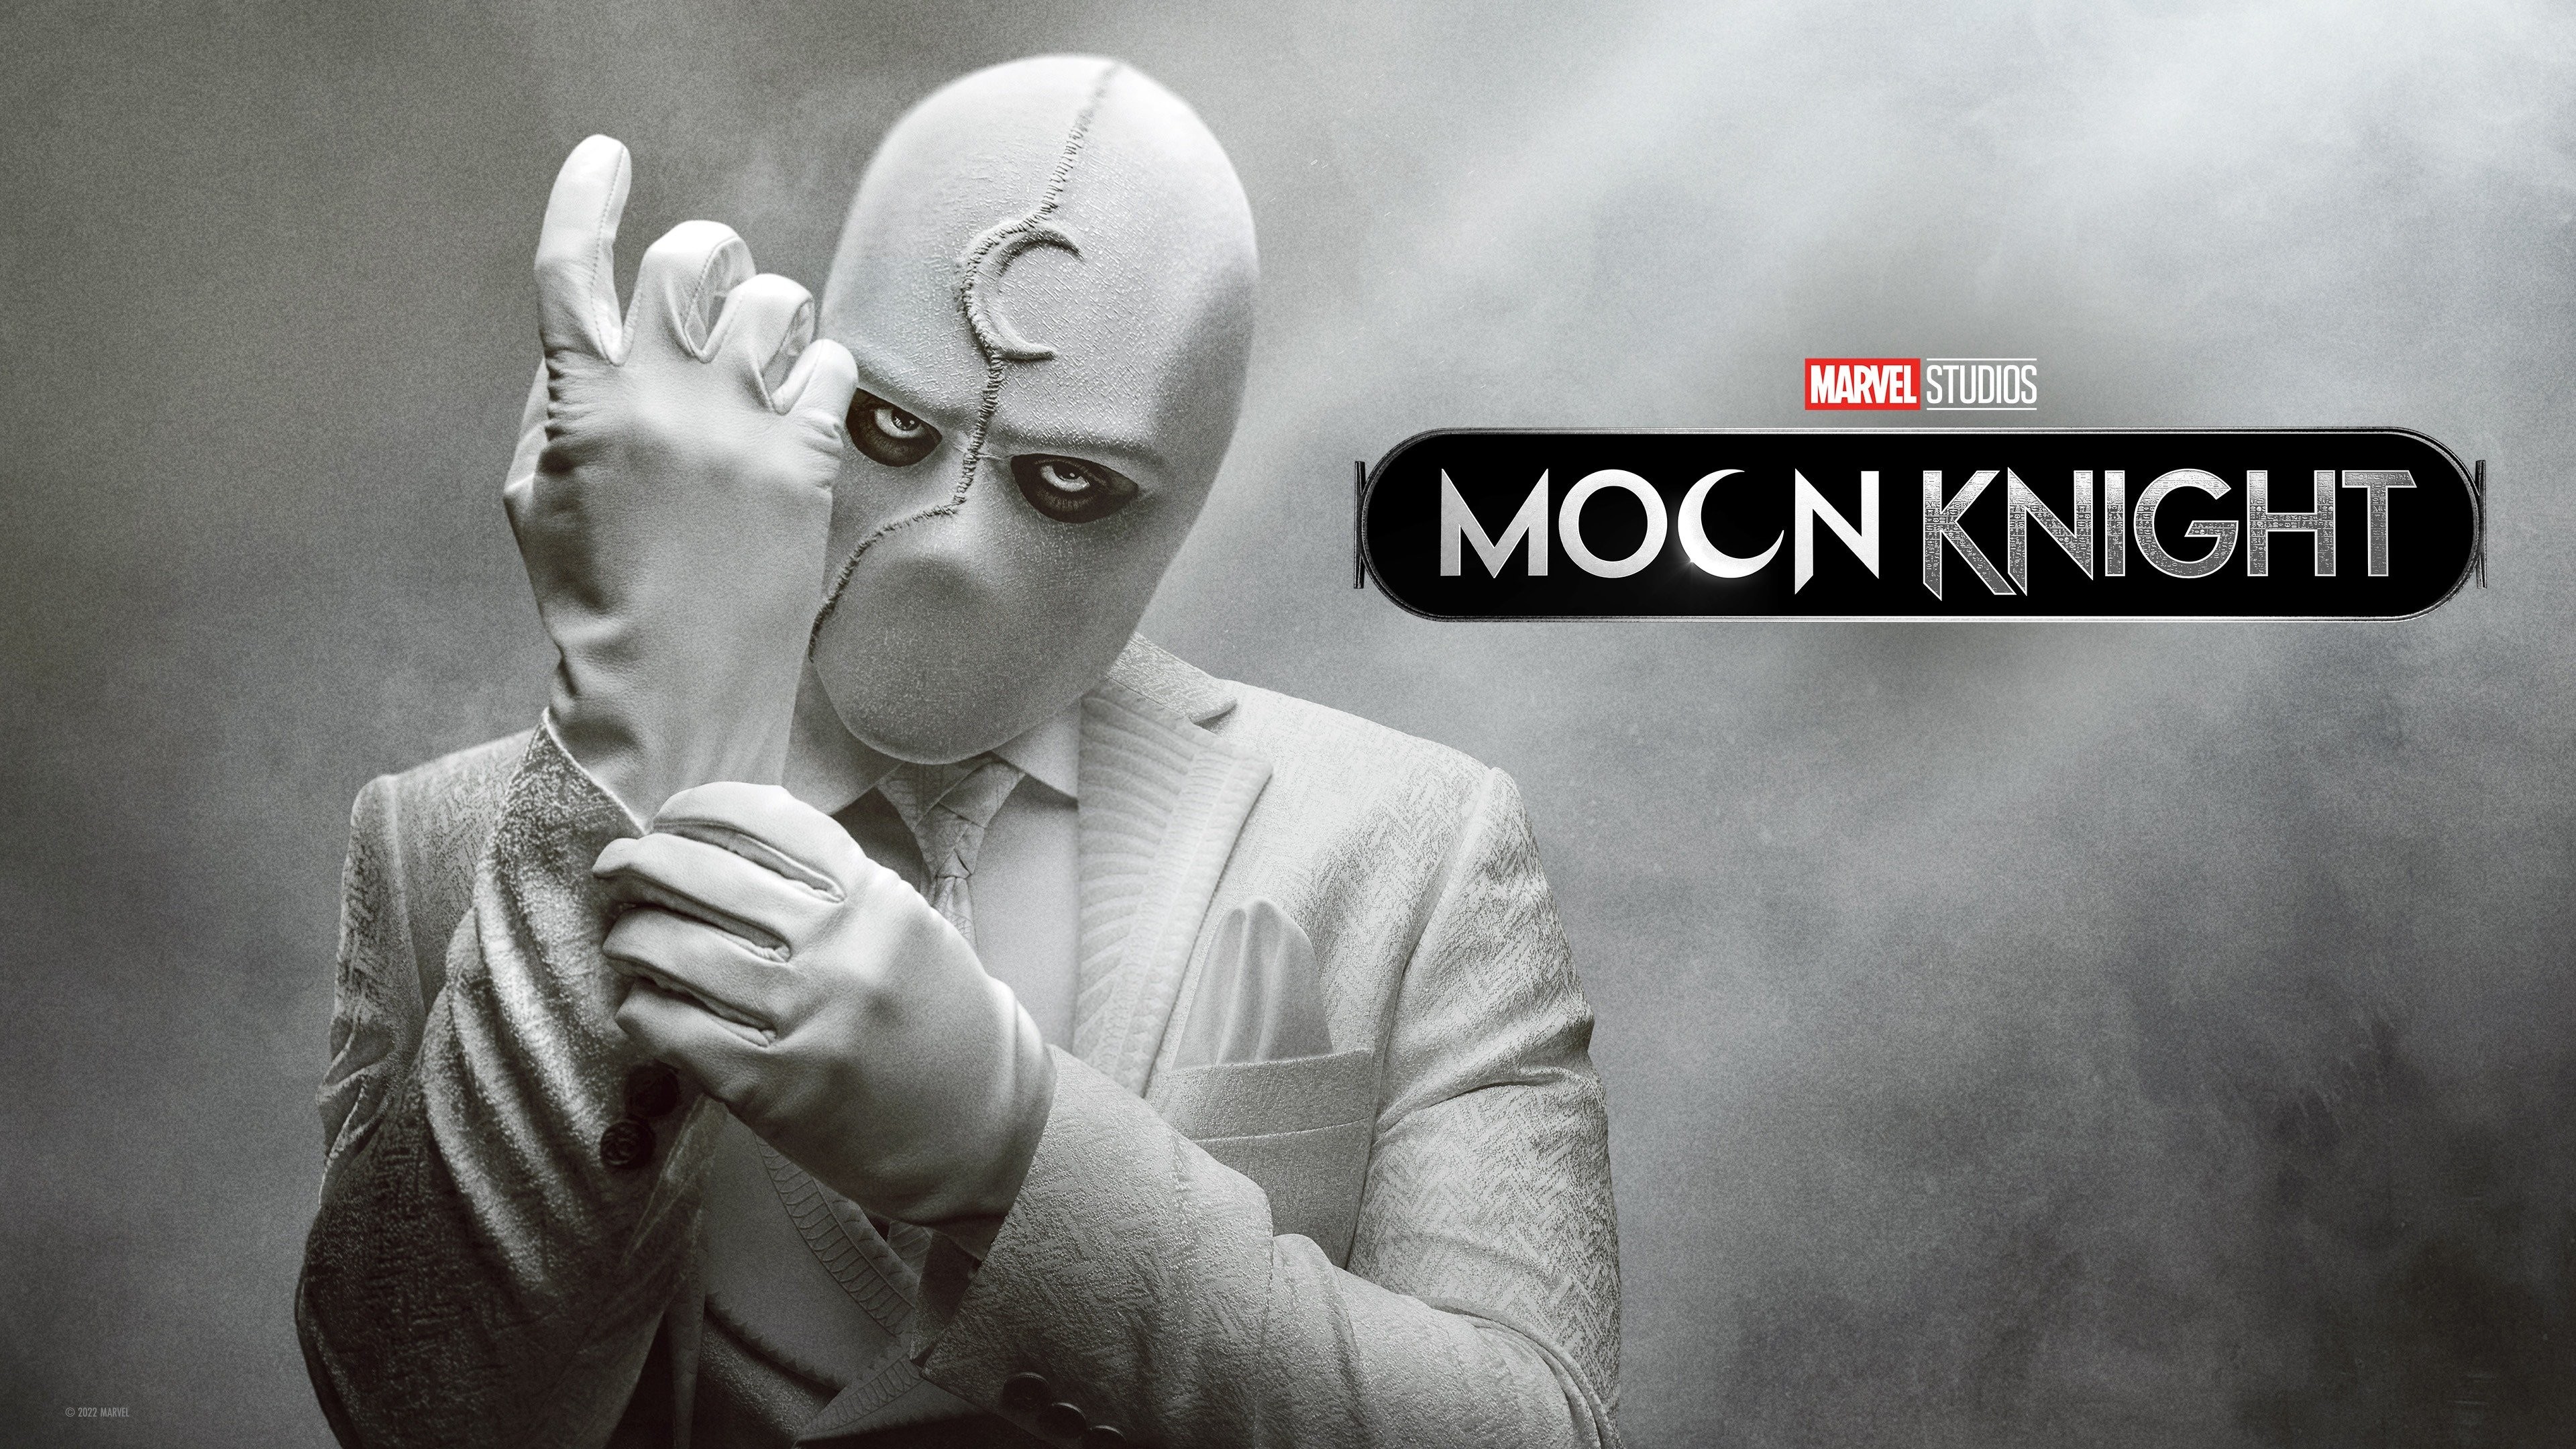 Moon Knight Season 2 Confirmed #marvel#marvelstudios#mcu#moonknight#ma, moon  knight